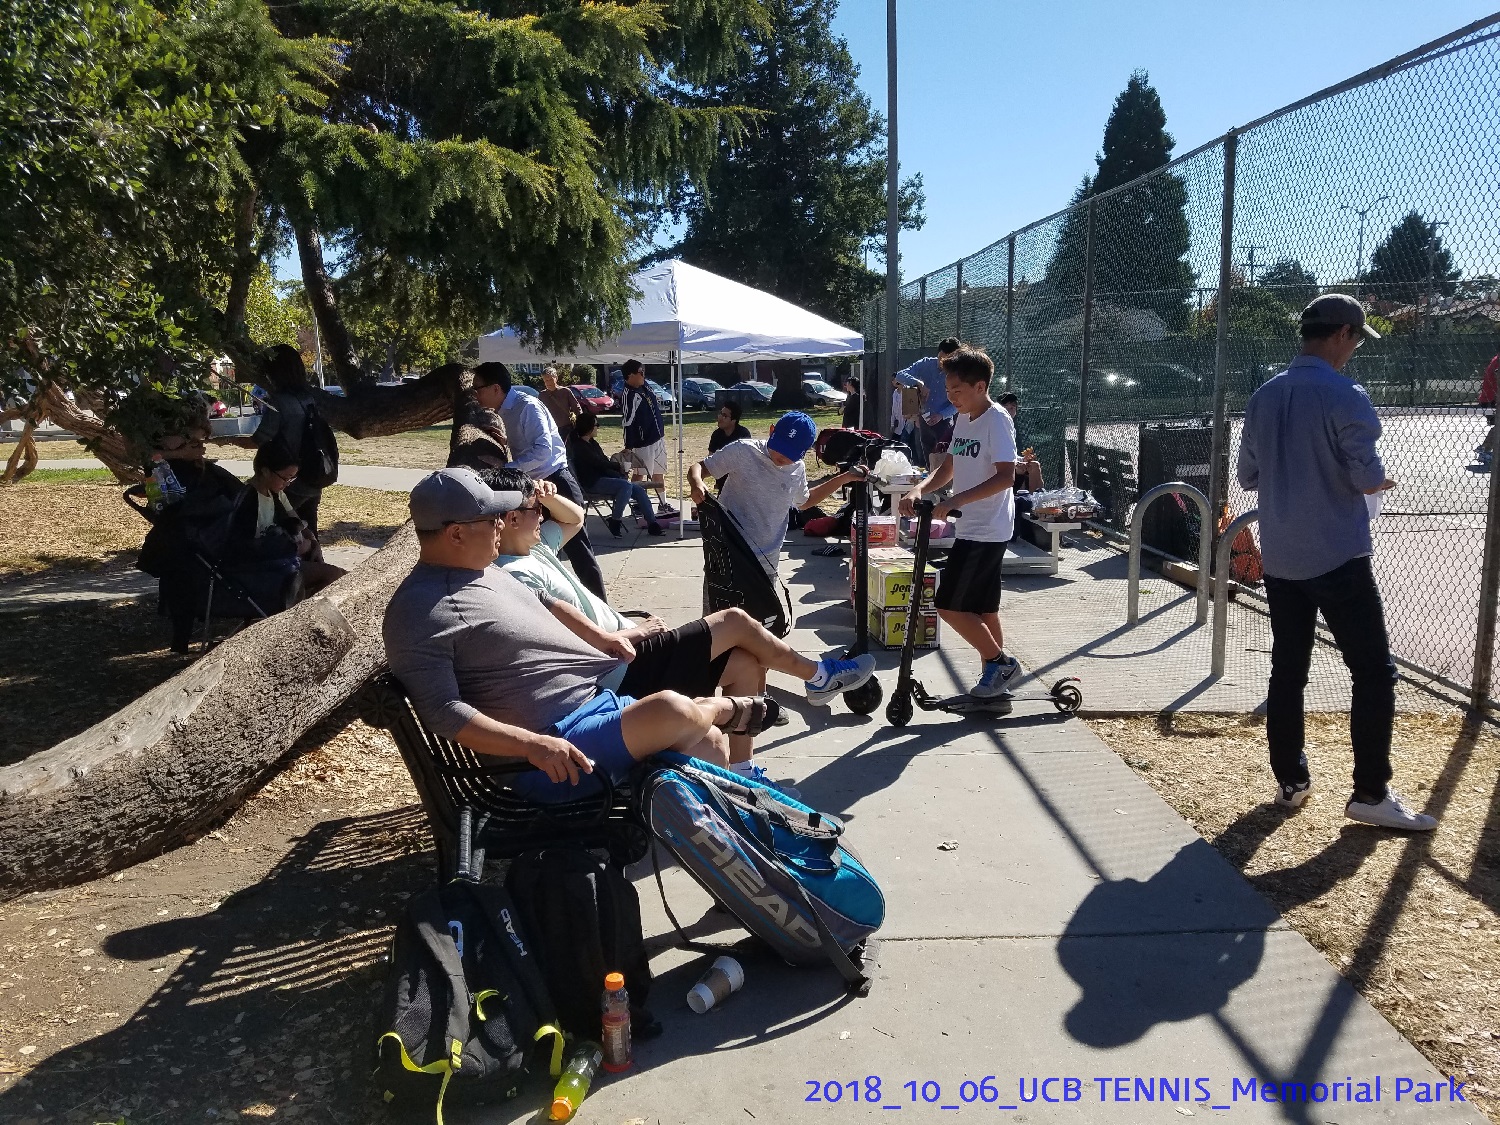 resized_2018_10_06_UCB Tennis at Memorial Park_145734.jpg